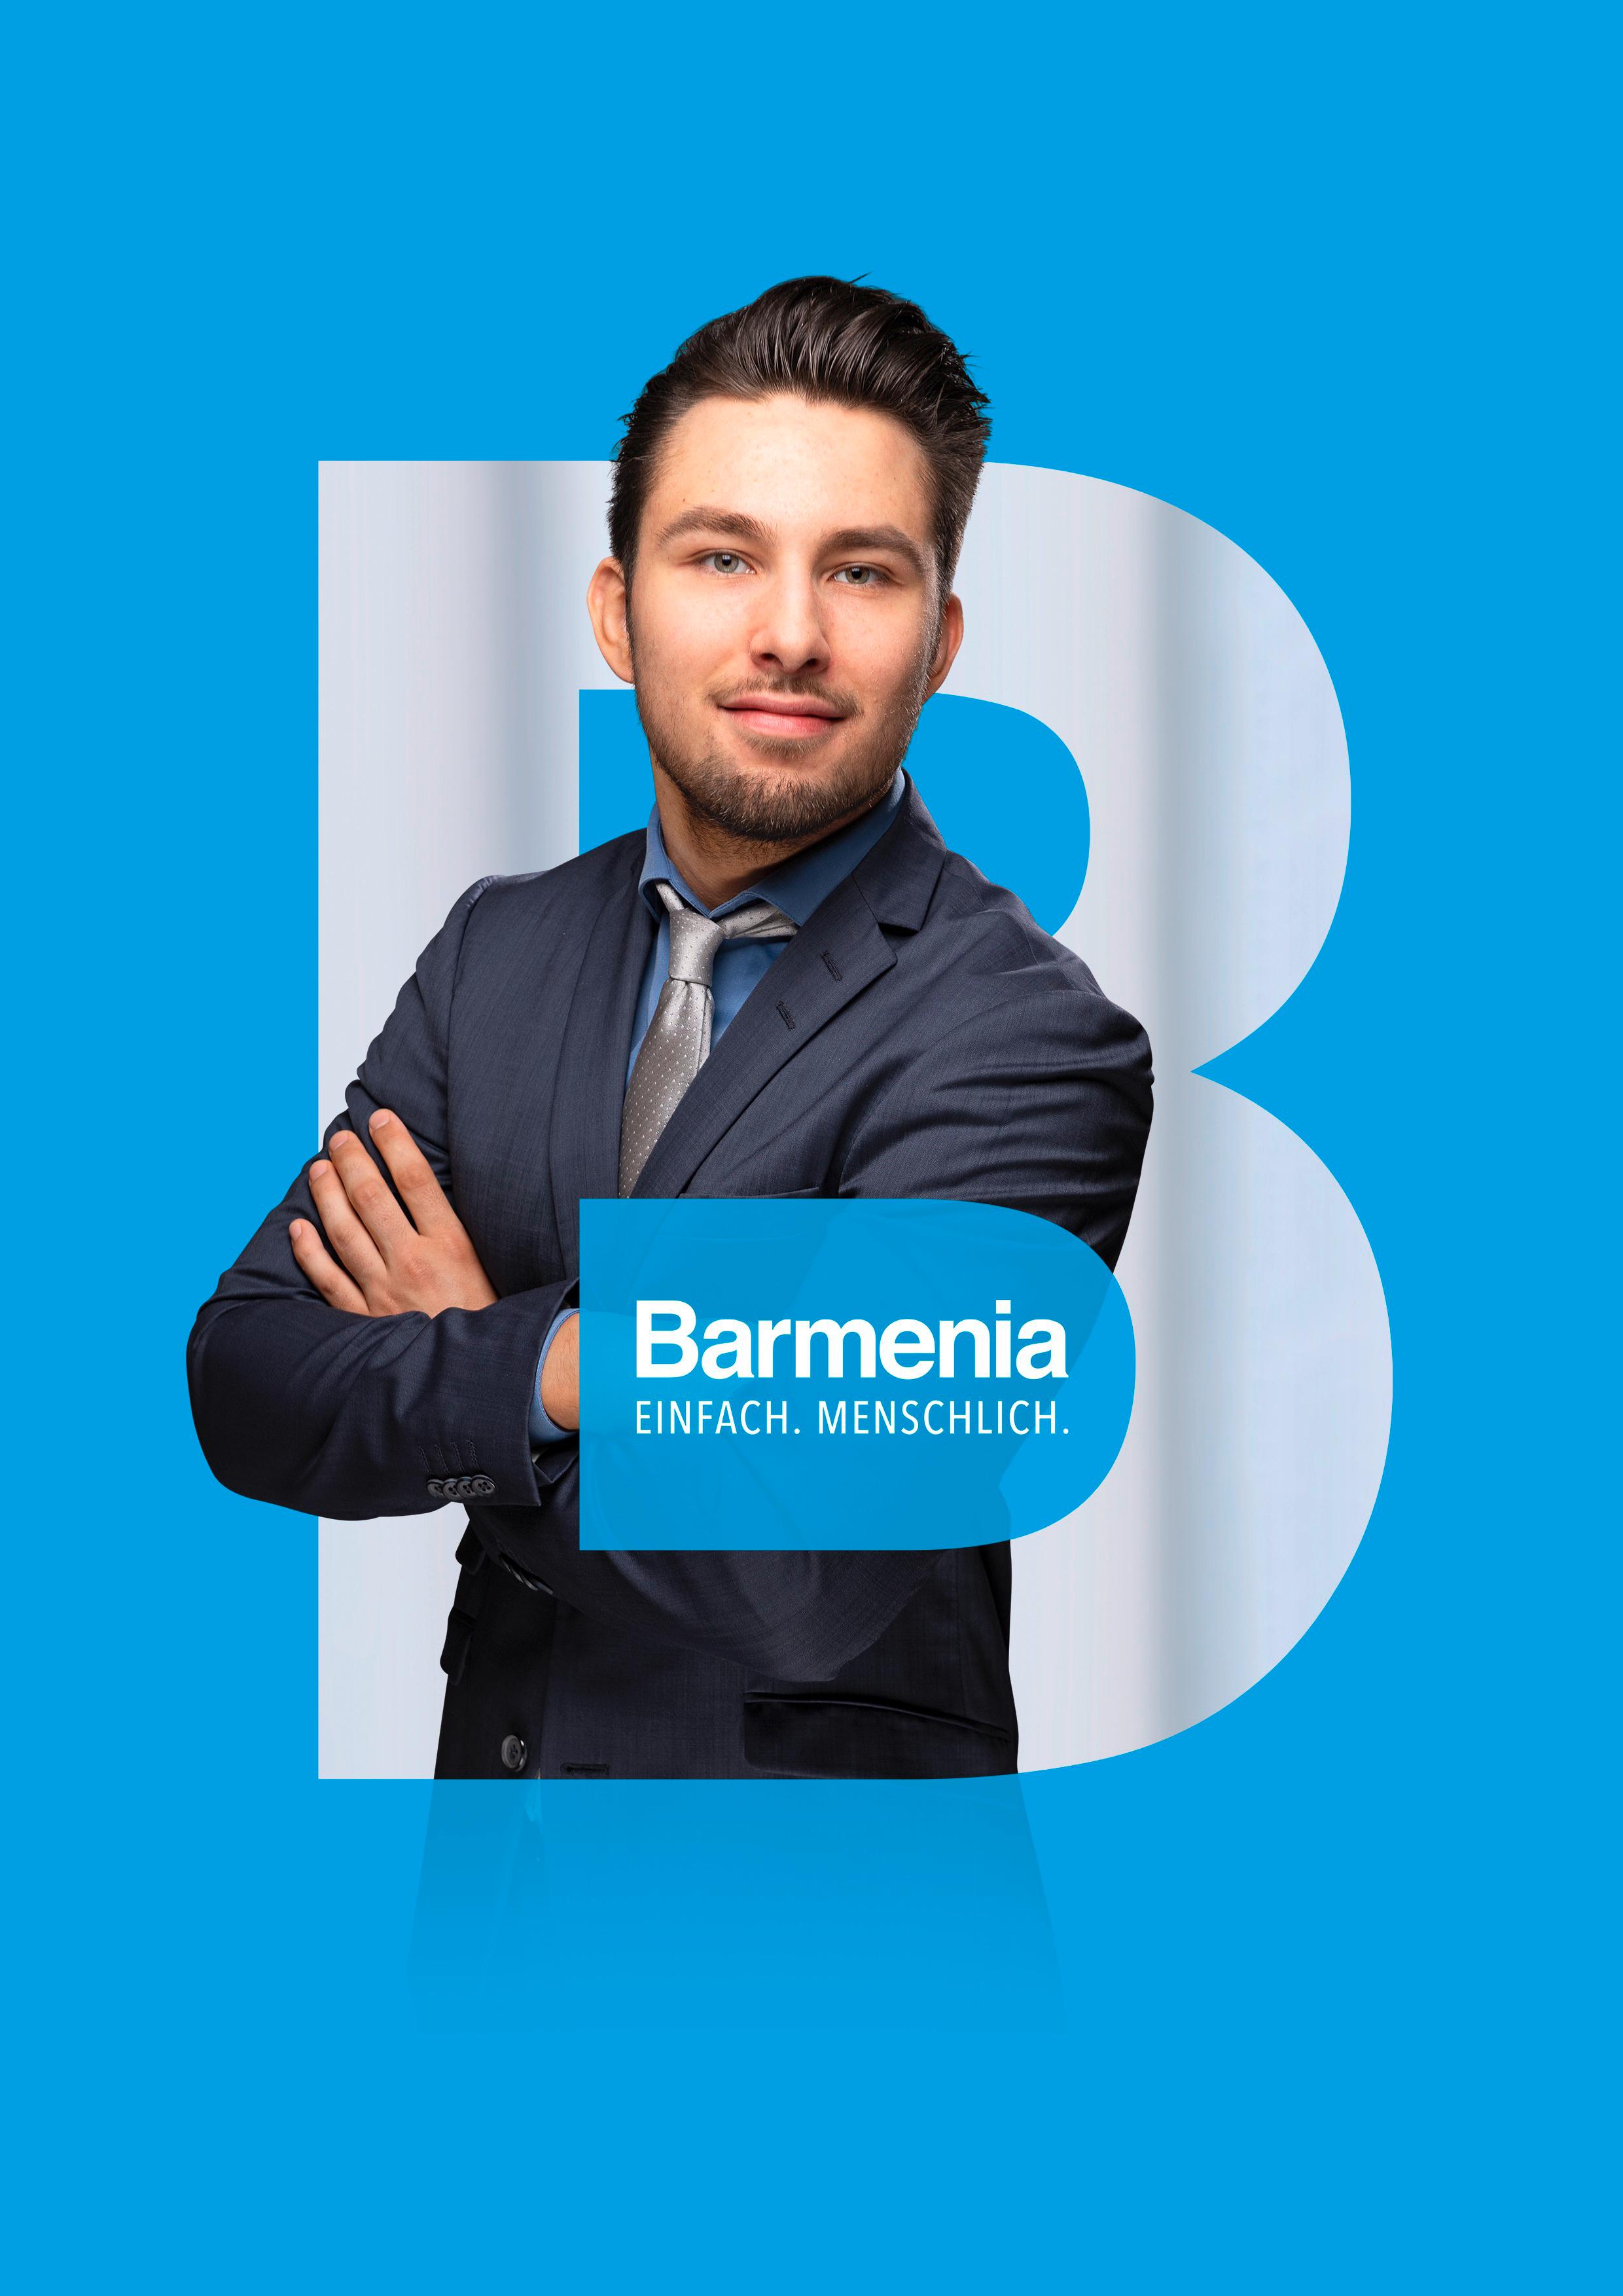 Daniel Taubert. Ihr Ansprechpartner für die Barmenia Versicherung in Hannover.